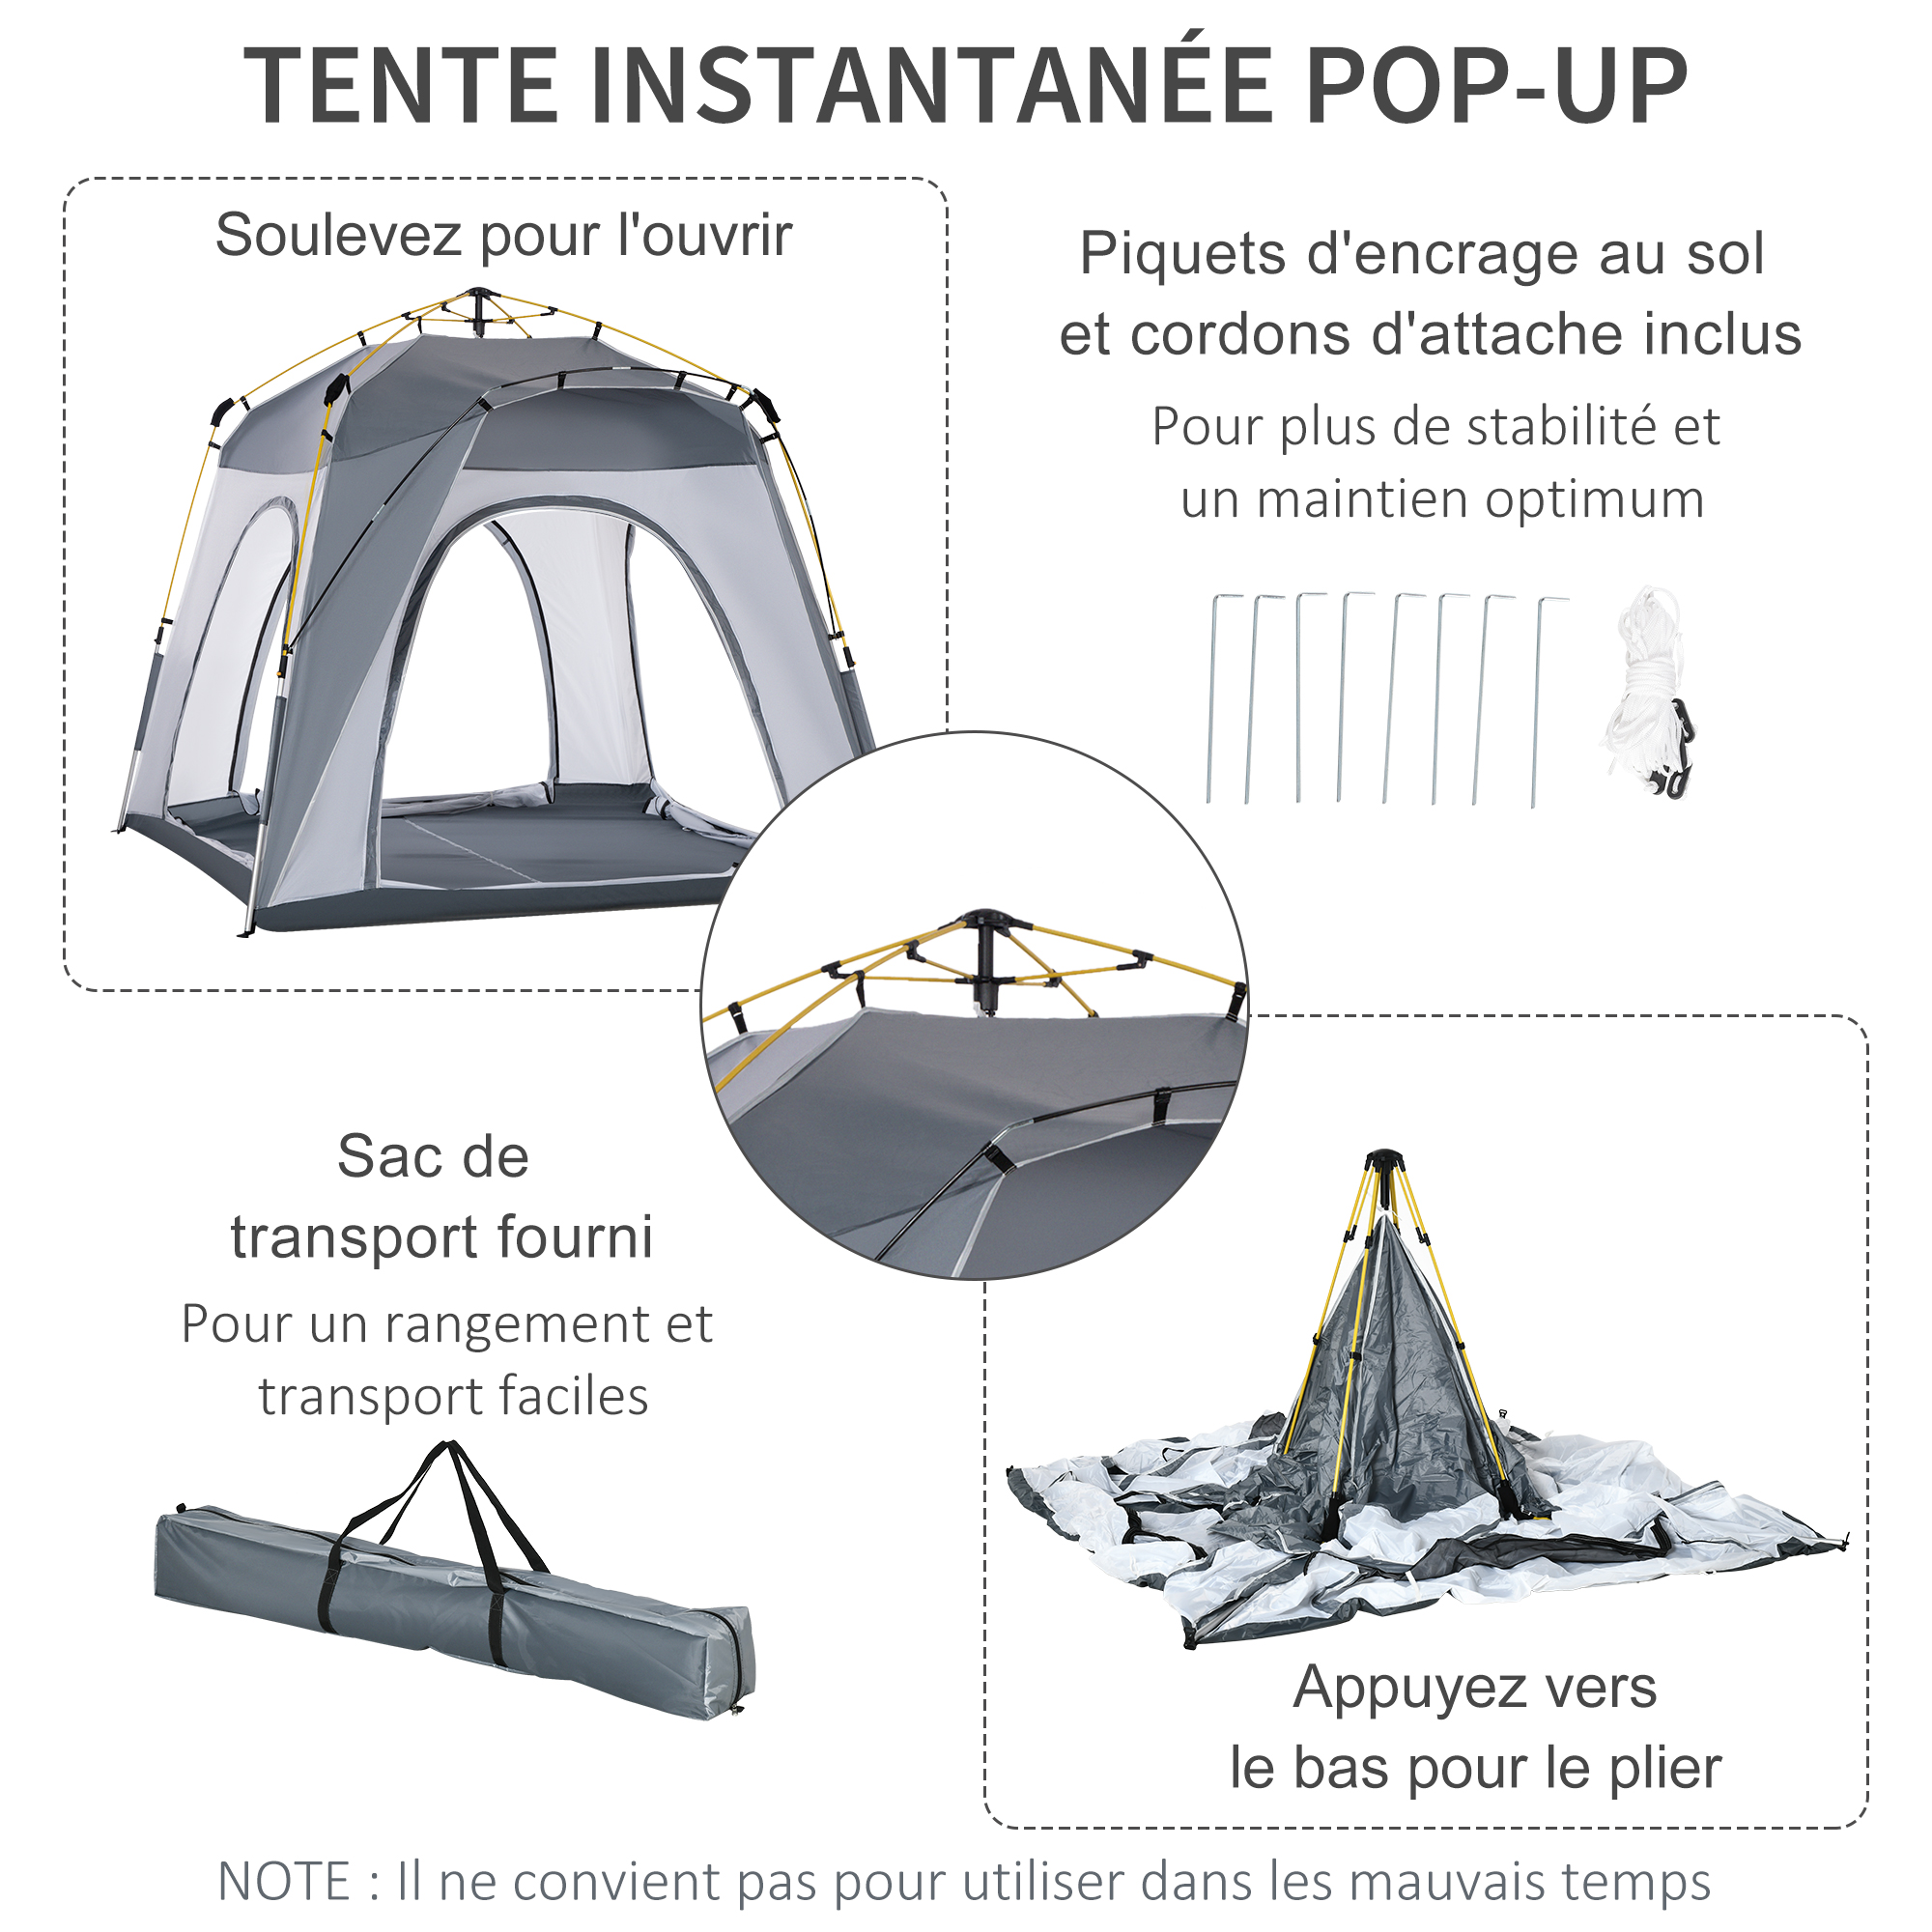 Outsunny Tente de camping familiale 4 personnes montage instantanée pop-up  4 fenêtres pare-soleil dim. 2,4L x 2,4l x 1,95H m fibre verre polyester  blanc gris